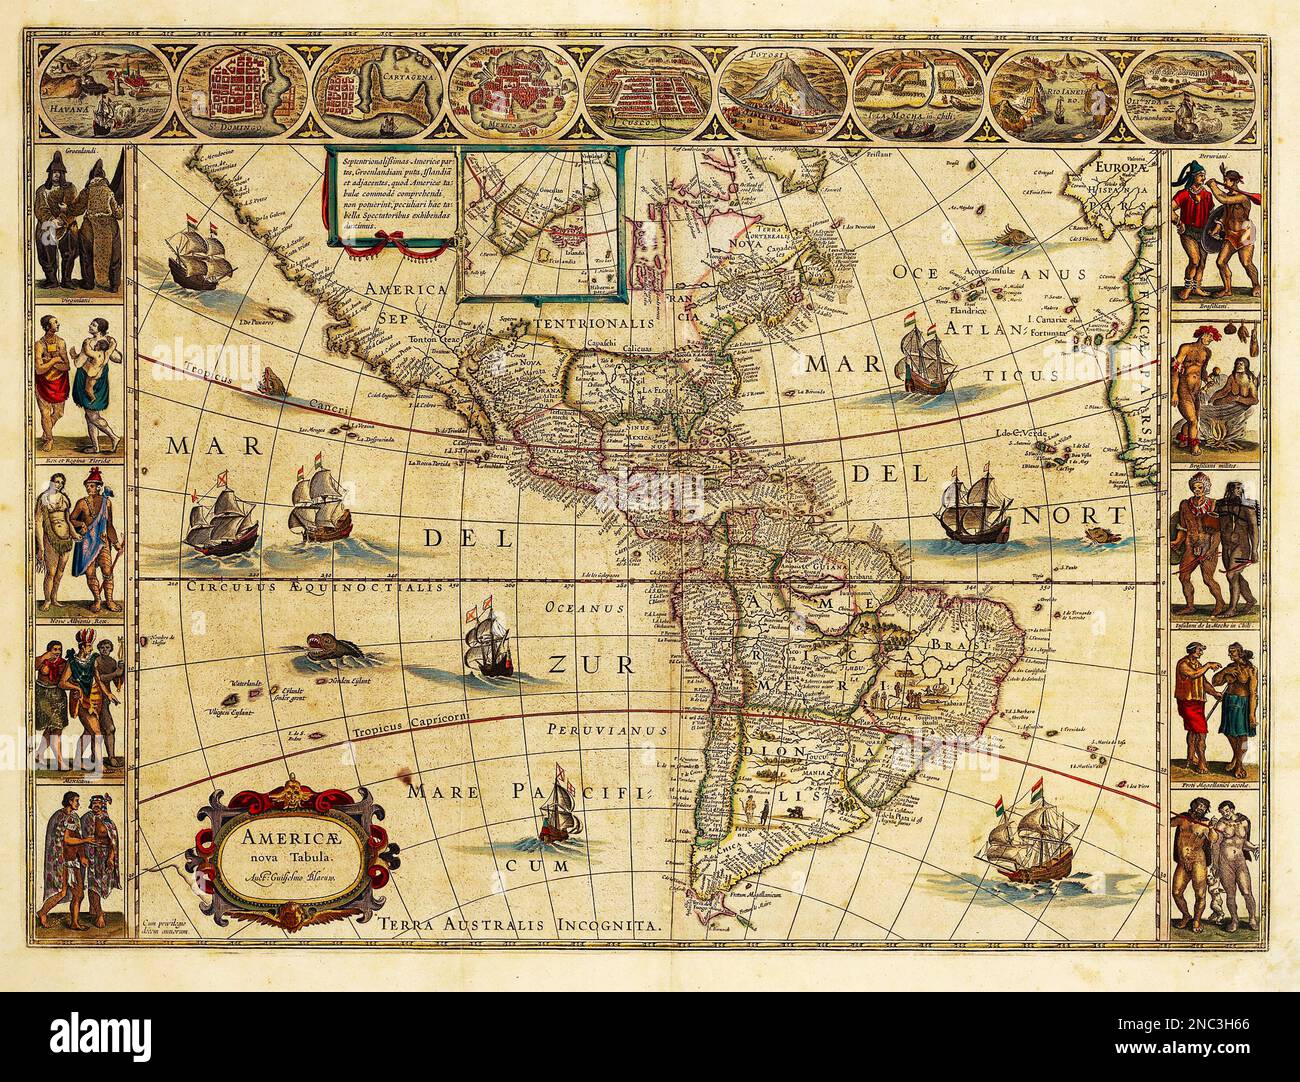 MAPOF THE AMERICAS 1614 von Joan Blaeu, dem niederländischen Kartografen Stockfoto